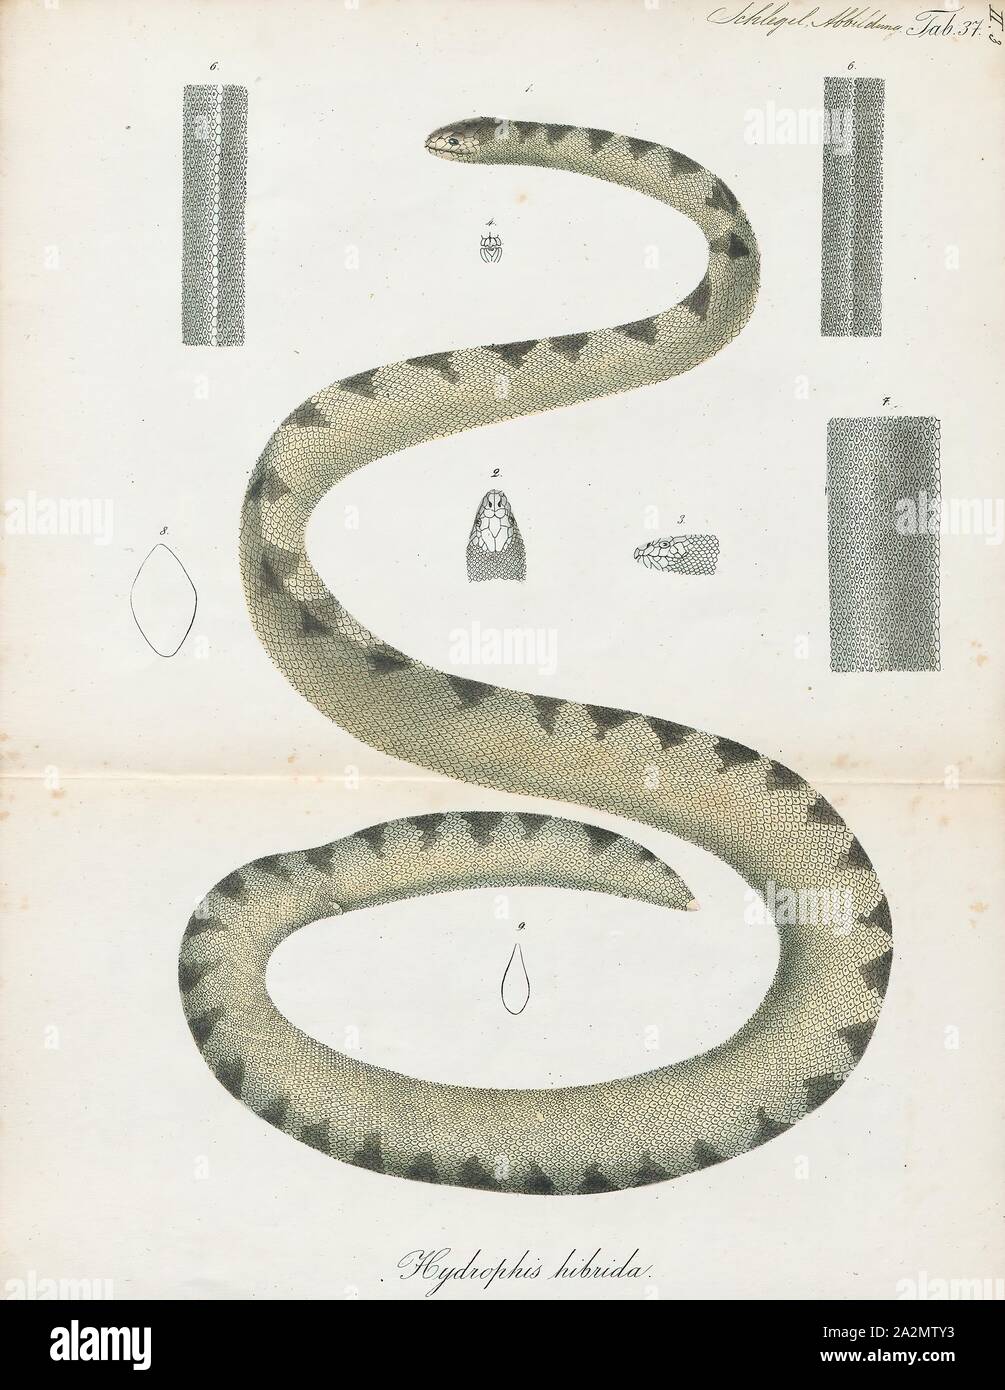 Hydrophis hybrida, Drucken, Hydrophis ist eine Gattung der Seeschlangen. Sie sind in der Regel in Indo-Australian und Südostasiatischen Gewässern gefunden., 1700-1880 Stockfoto